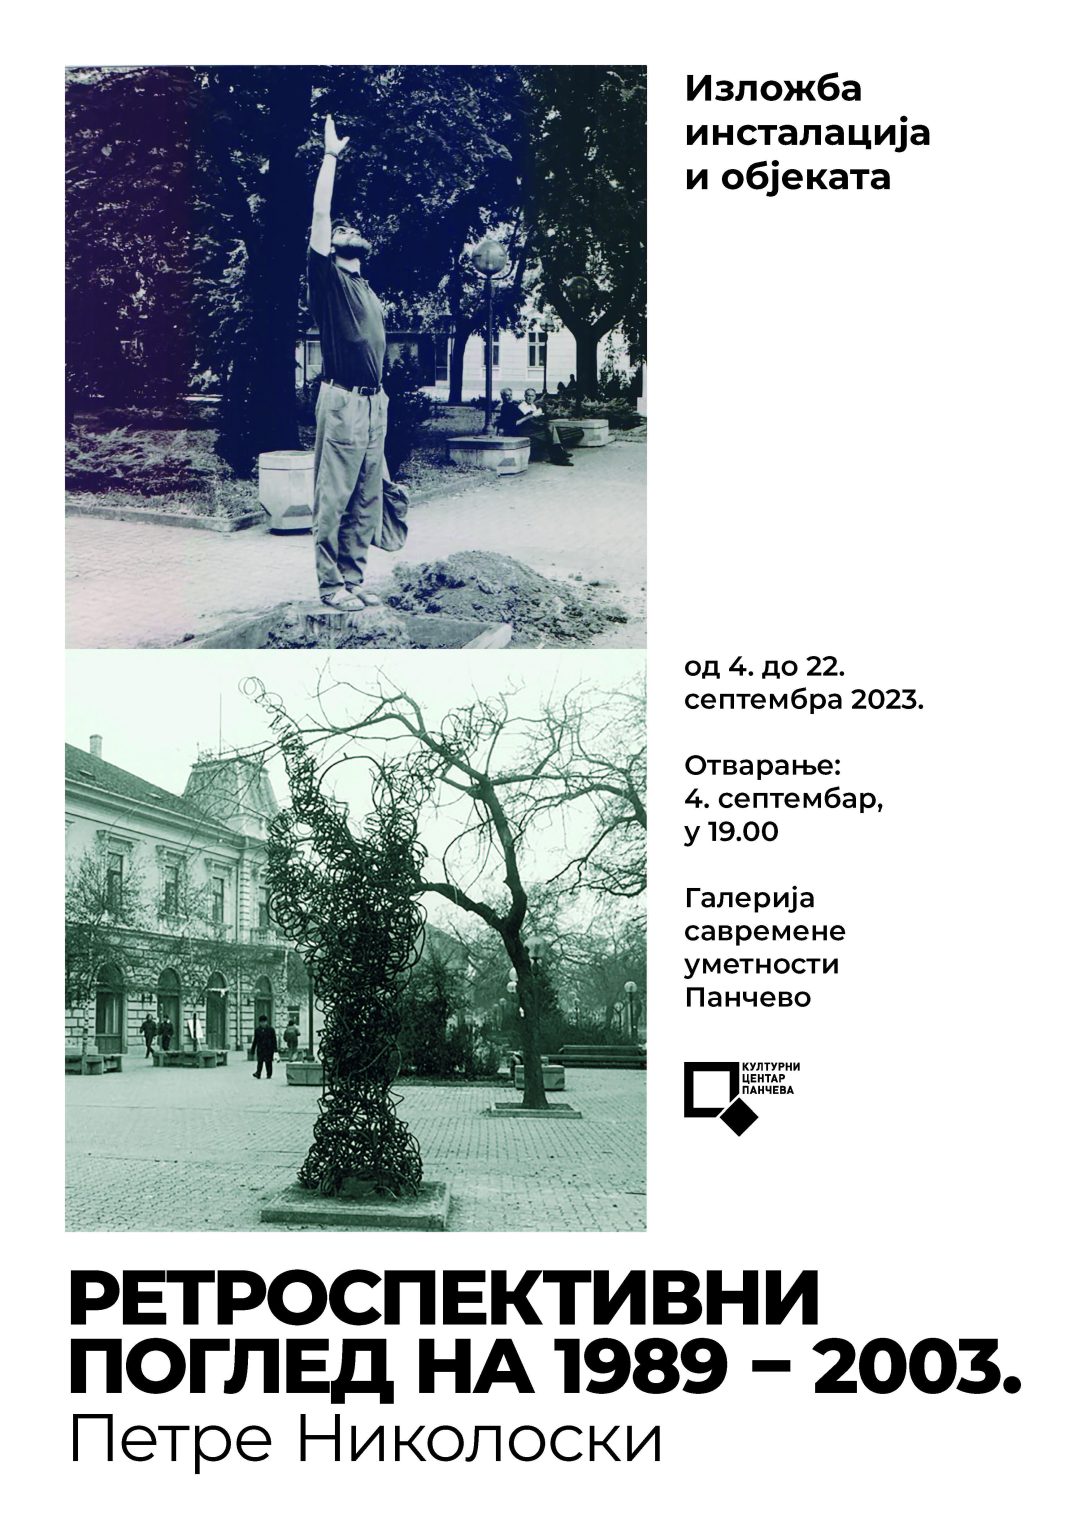 KC Pančevo: Izložba instalacija i objekata „Retrospektivni pogled na 1989 – 2003“ od 4. do 22. septembra